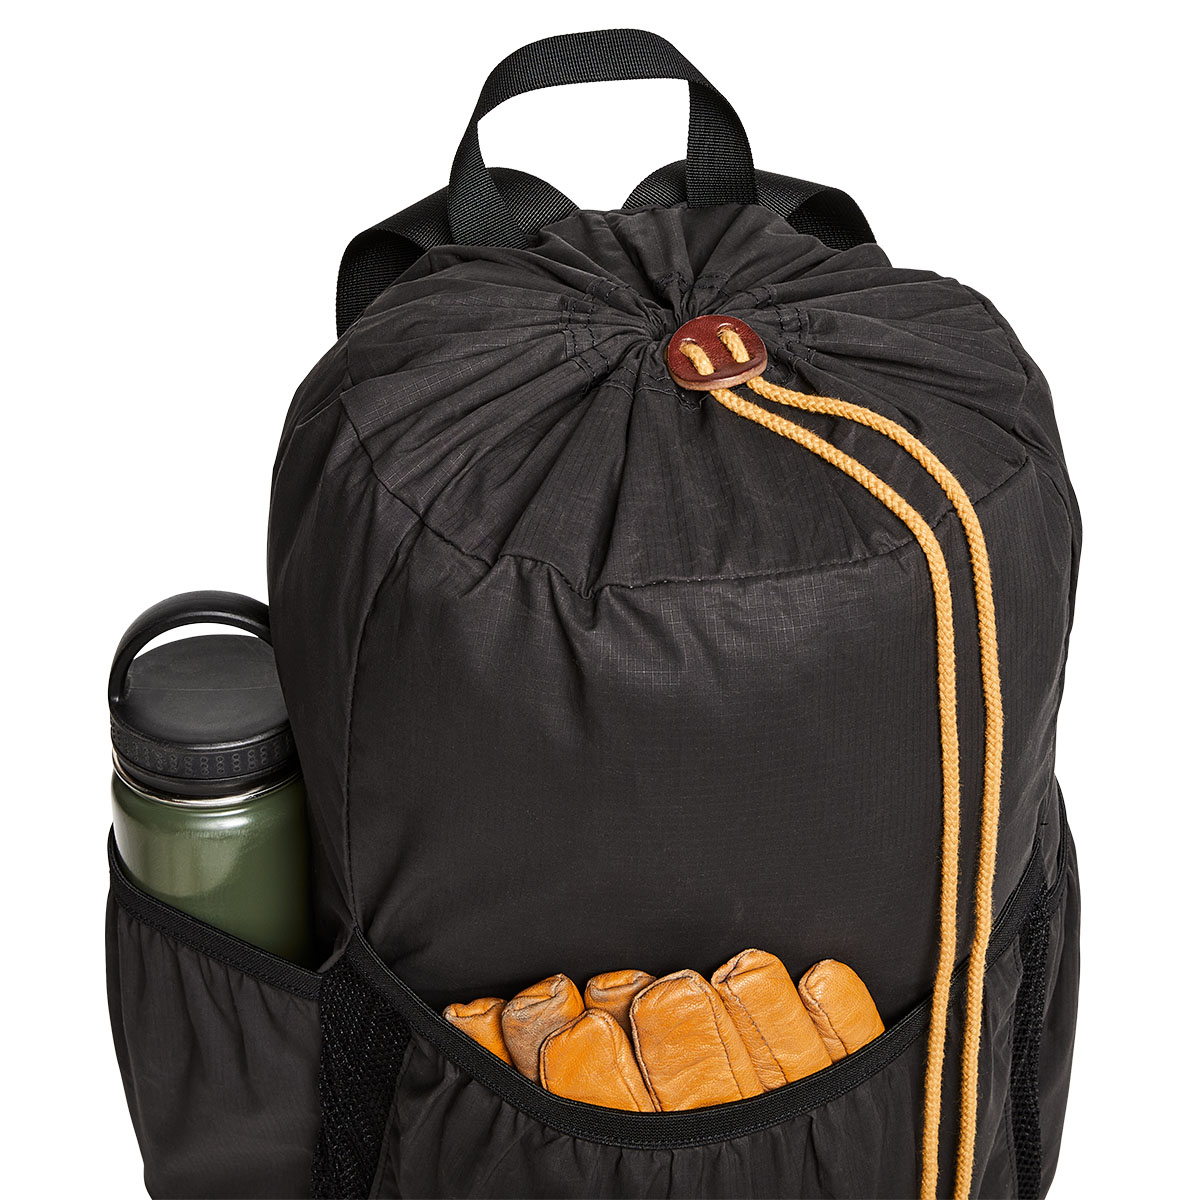 Filson Traveller Stowaway Backpack Stapleton Cinder, ein ultraleichter Rucksack, der sich einfach im Gepäck verstauen lässt